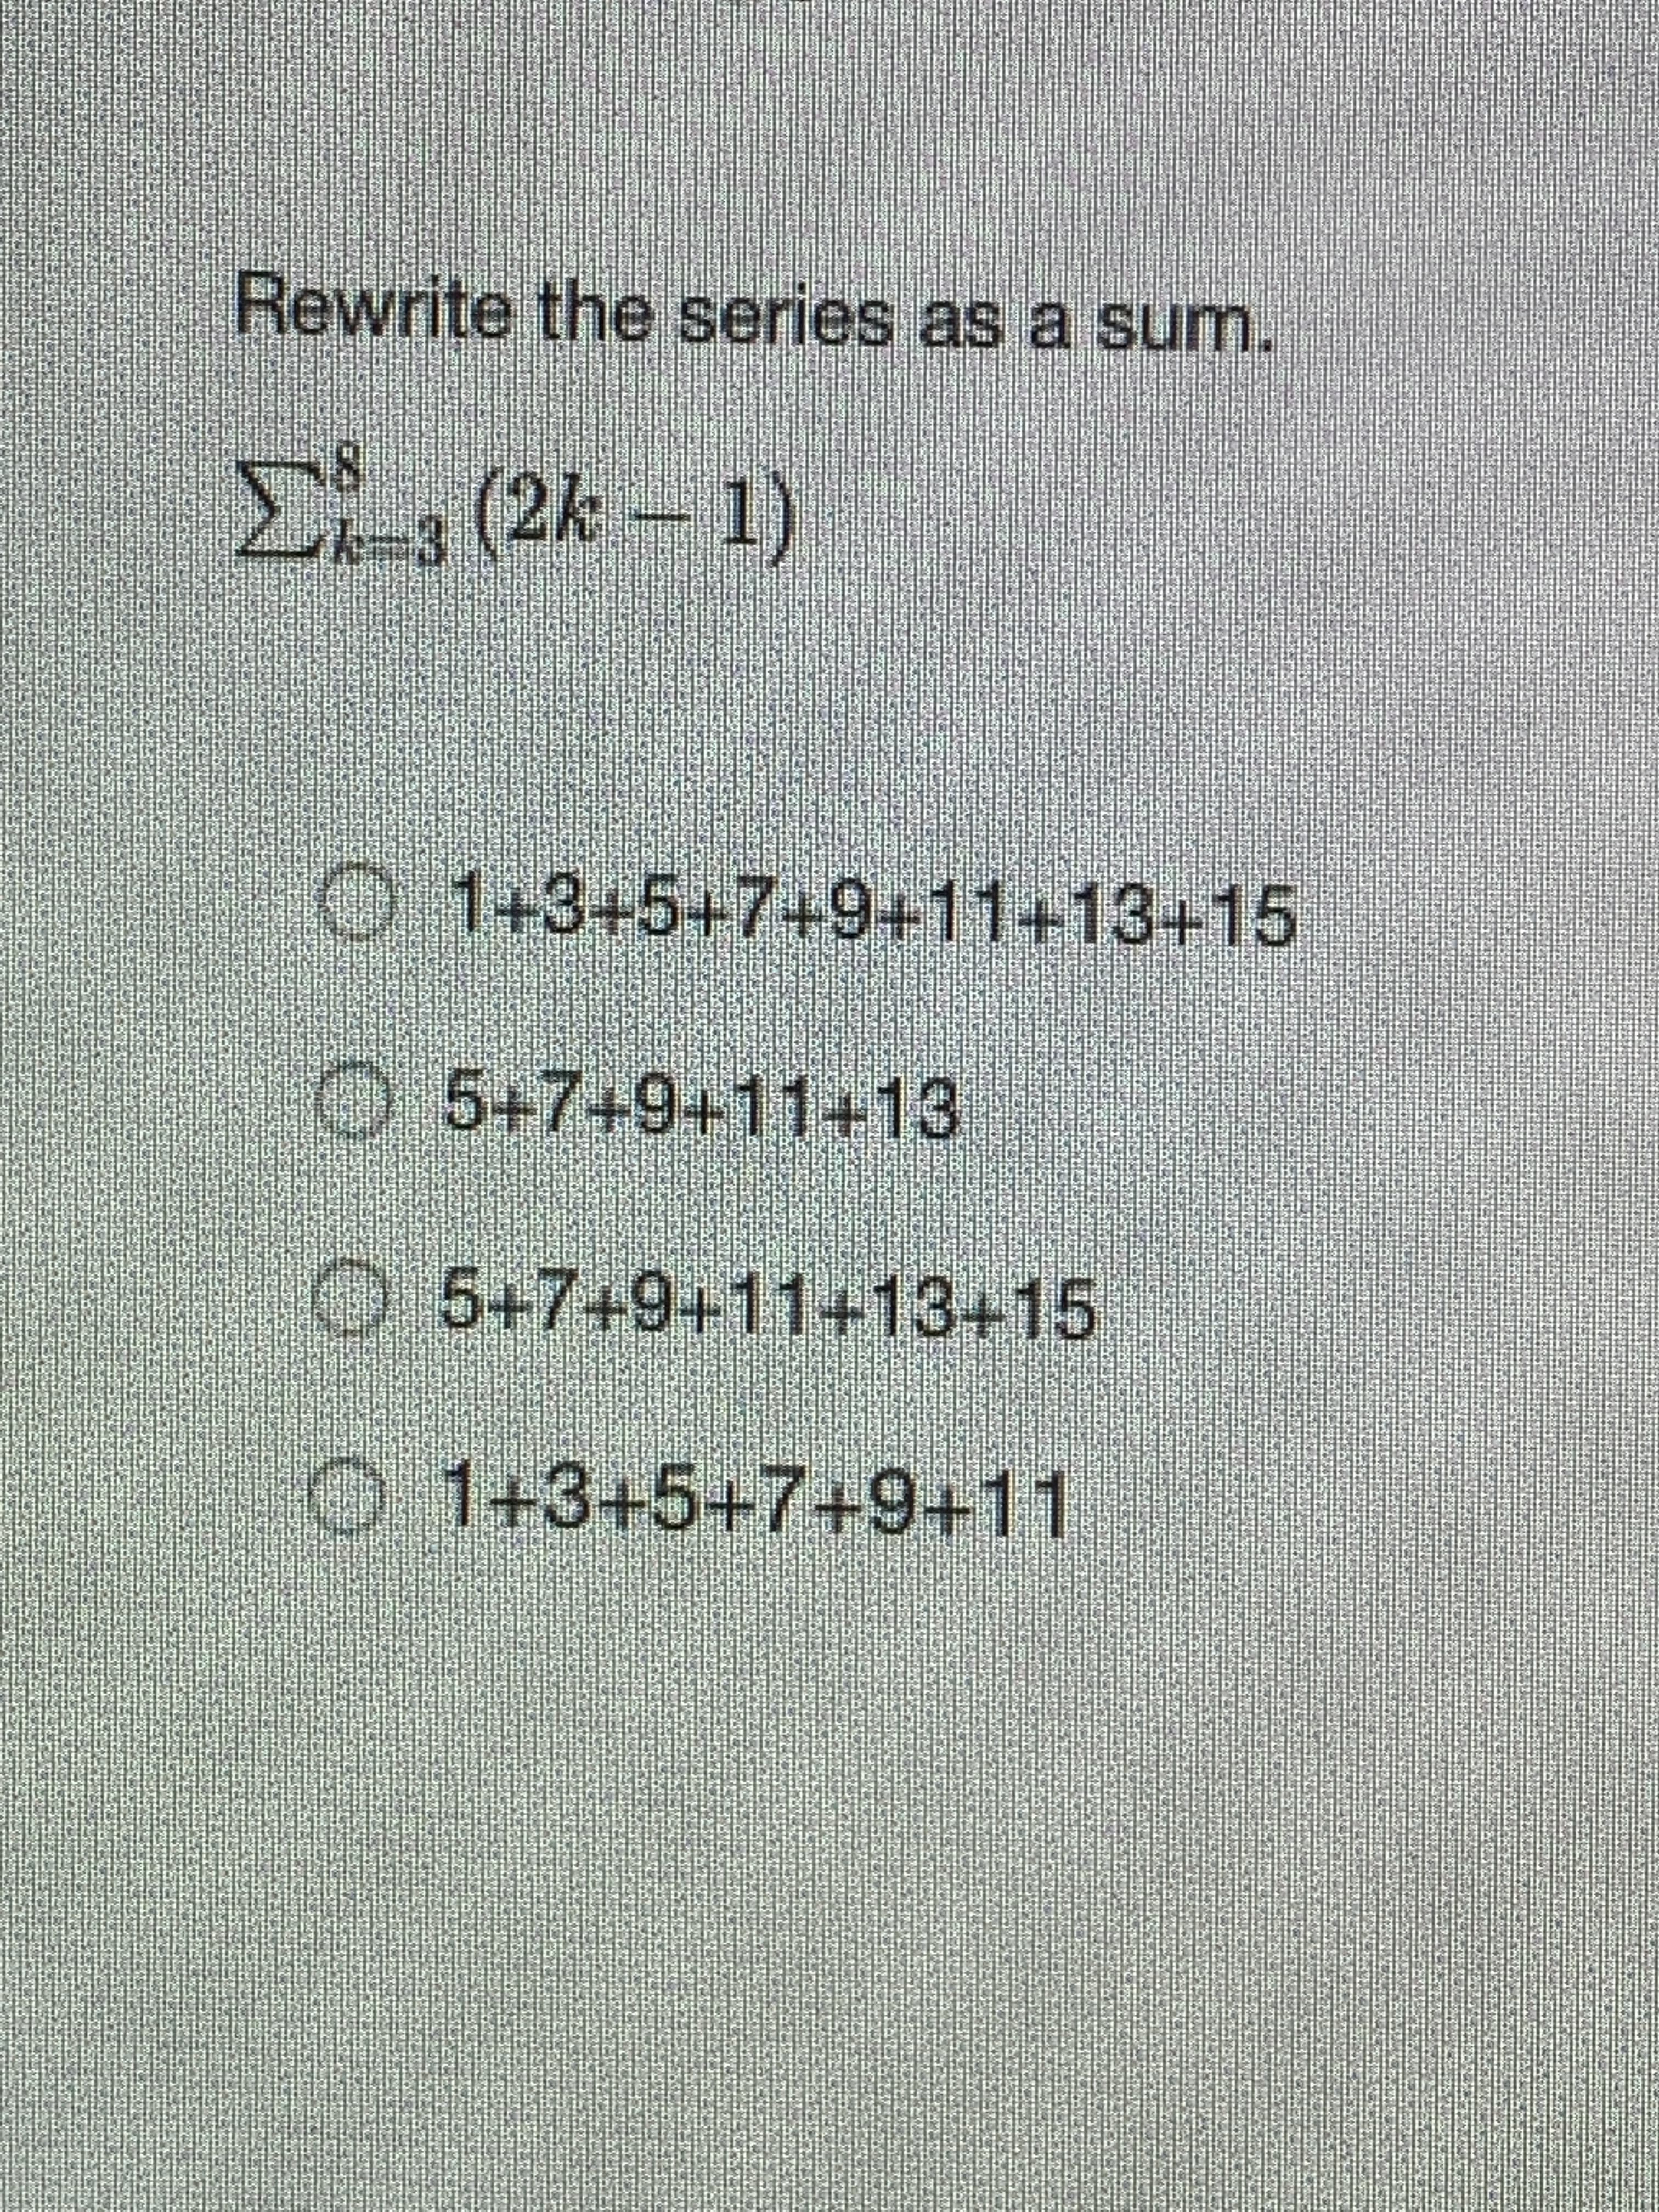 Rewrite the series as a sum.
E(2k 1)
